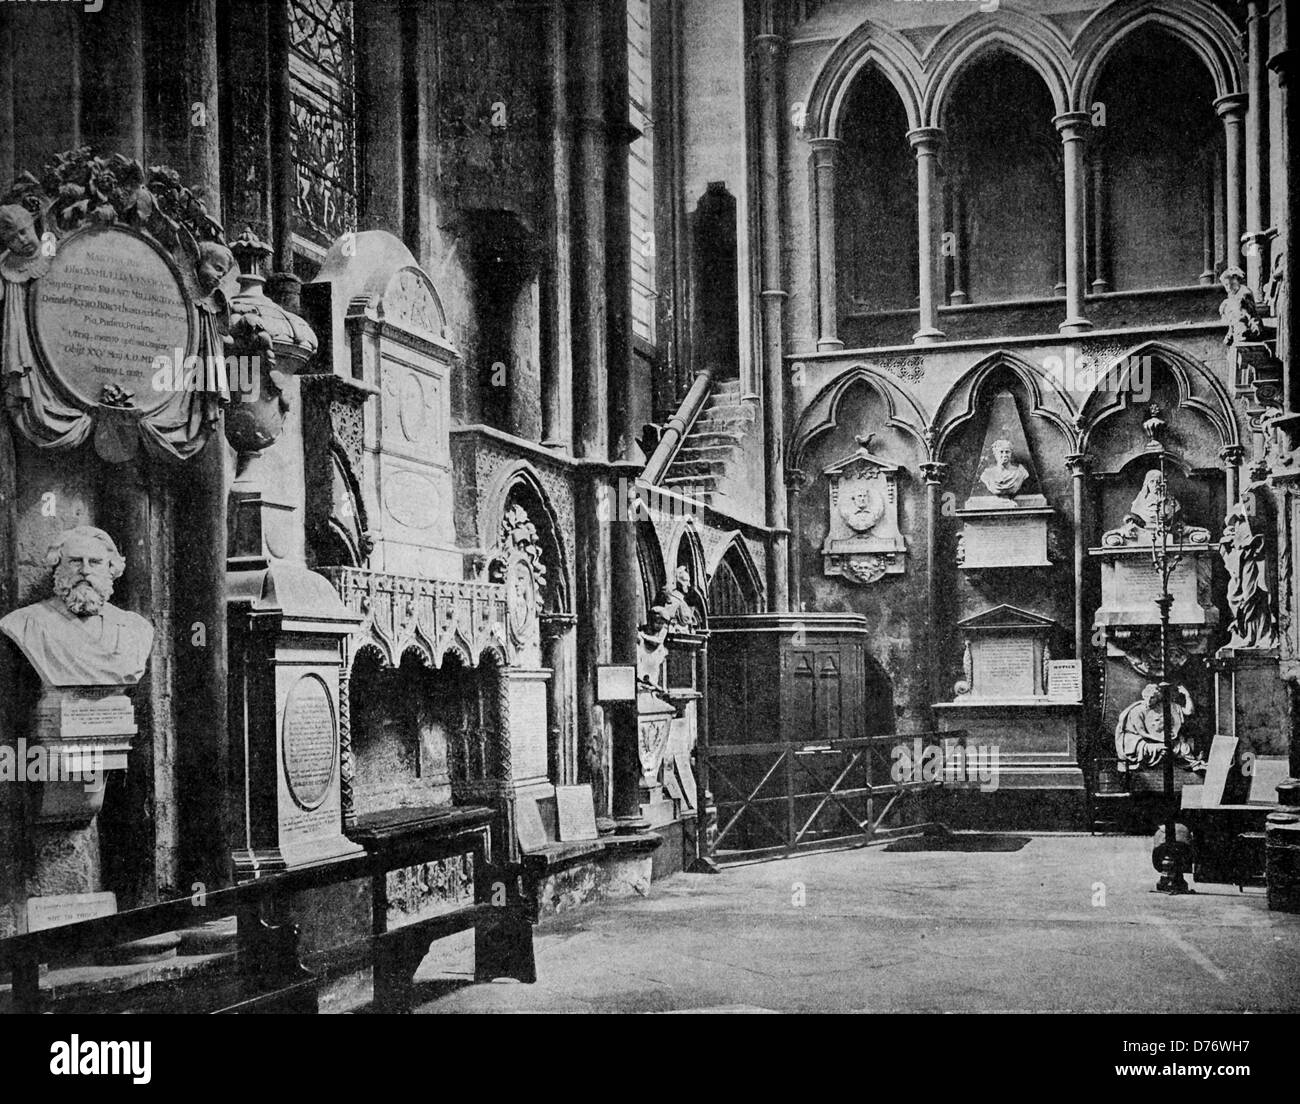 Autotype au début de l'intérieur de l'abbaye de Westminster, Londres, Angleterre, Royaume-Uni, 1880 Banque D'Images